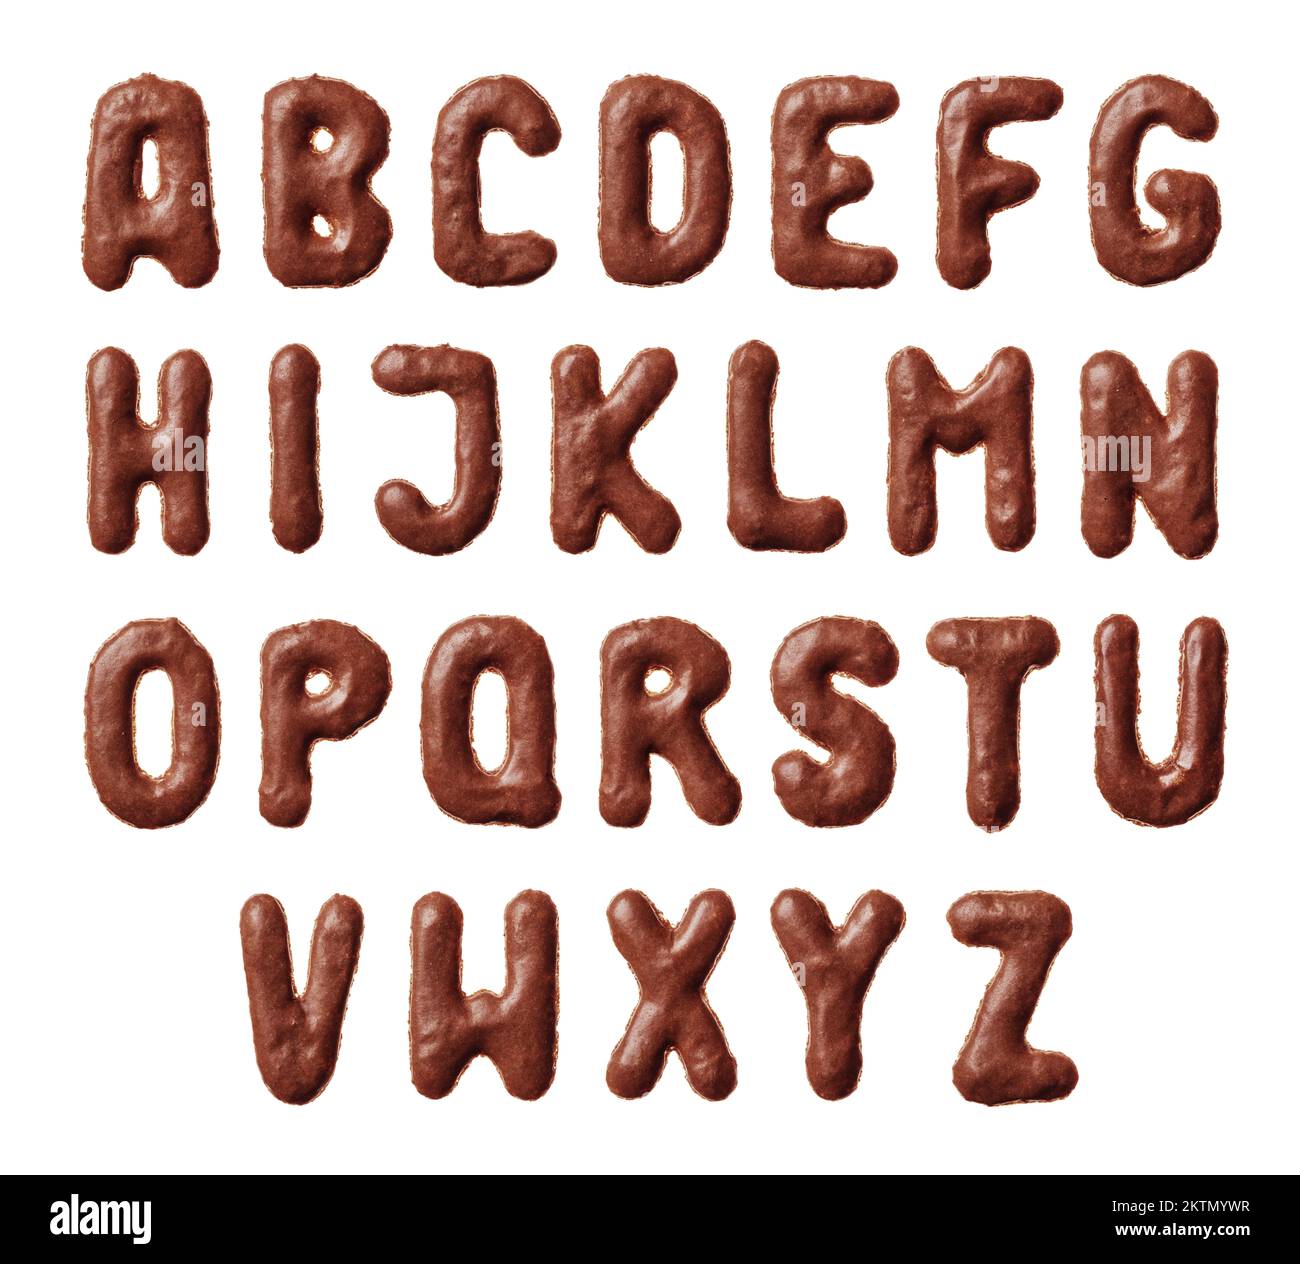 Lettere alfabetiche fatte di biscotti reali, isolate su sfondo bianco, primo piano Foto Stock